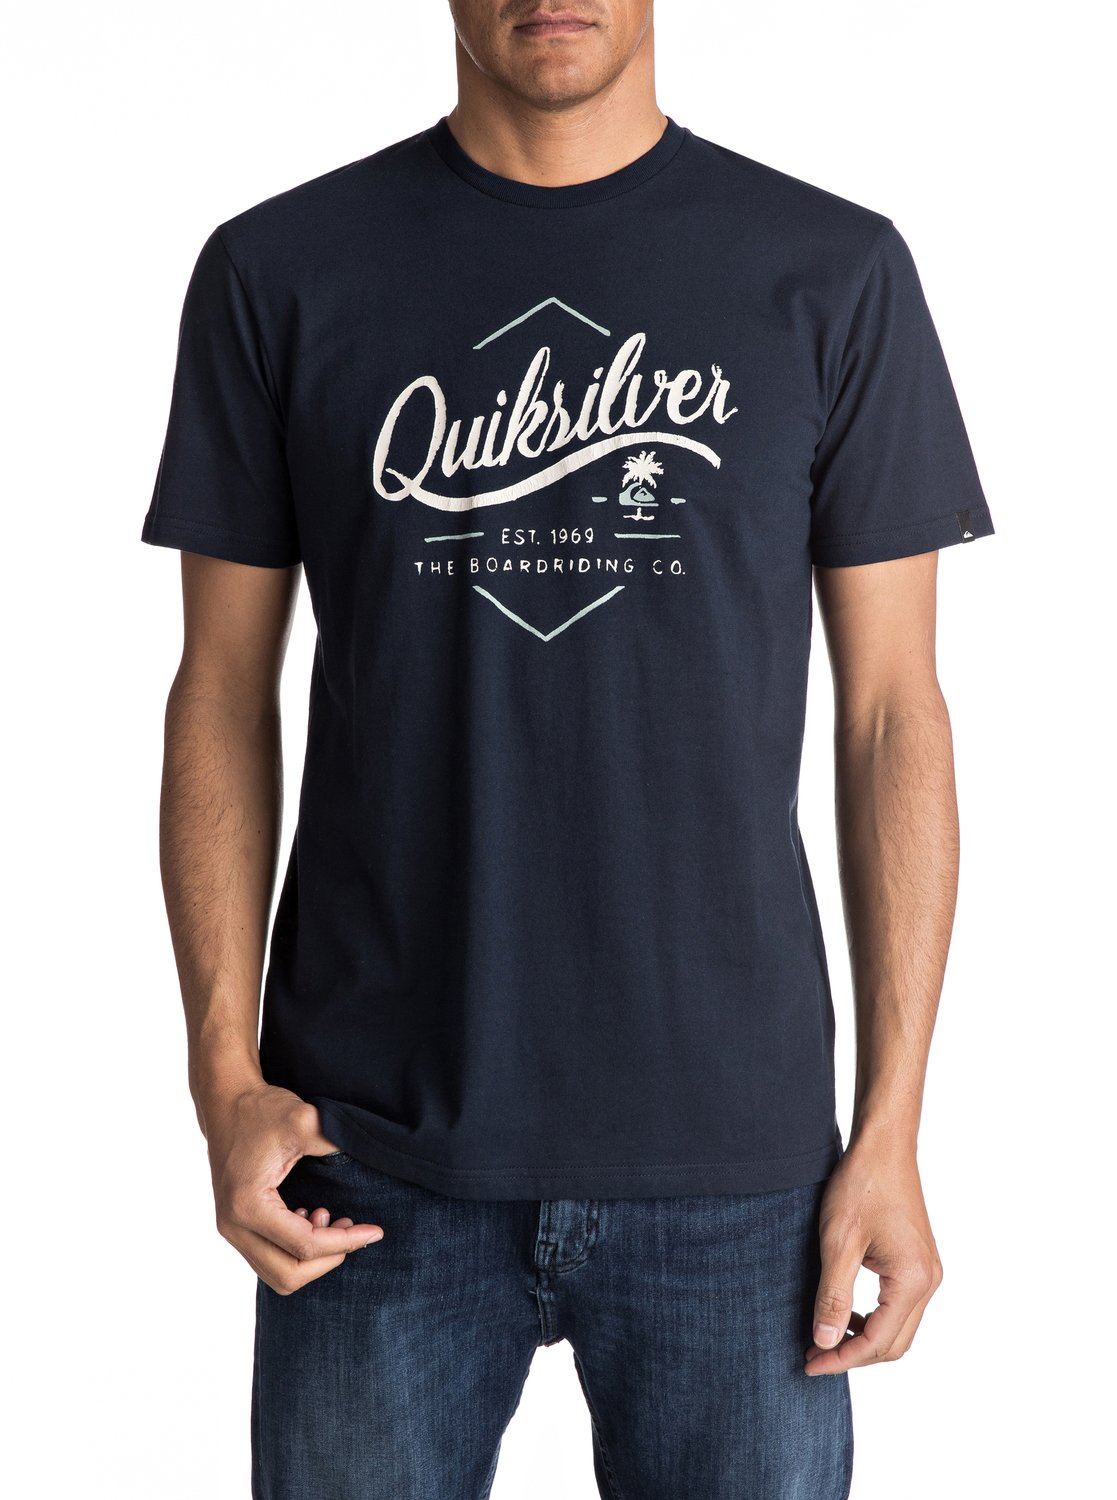 Classic Sea Tales - T Shirt pour Homme - Quiksilver